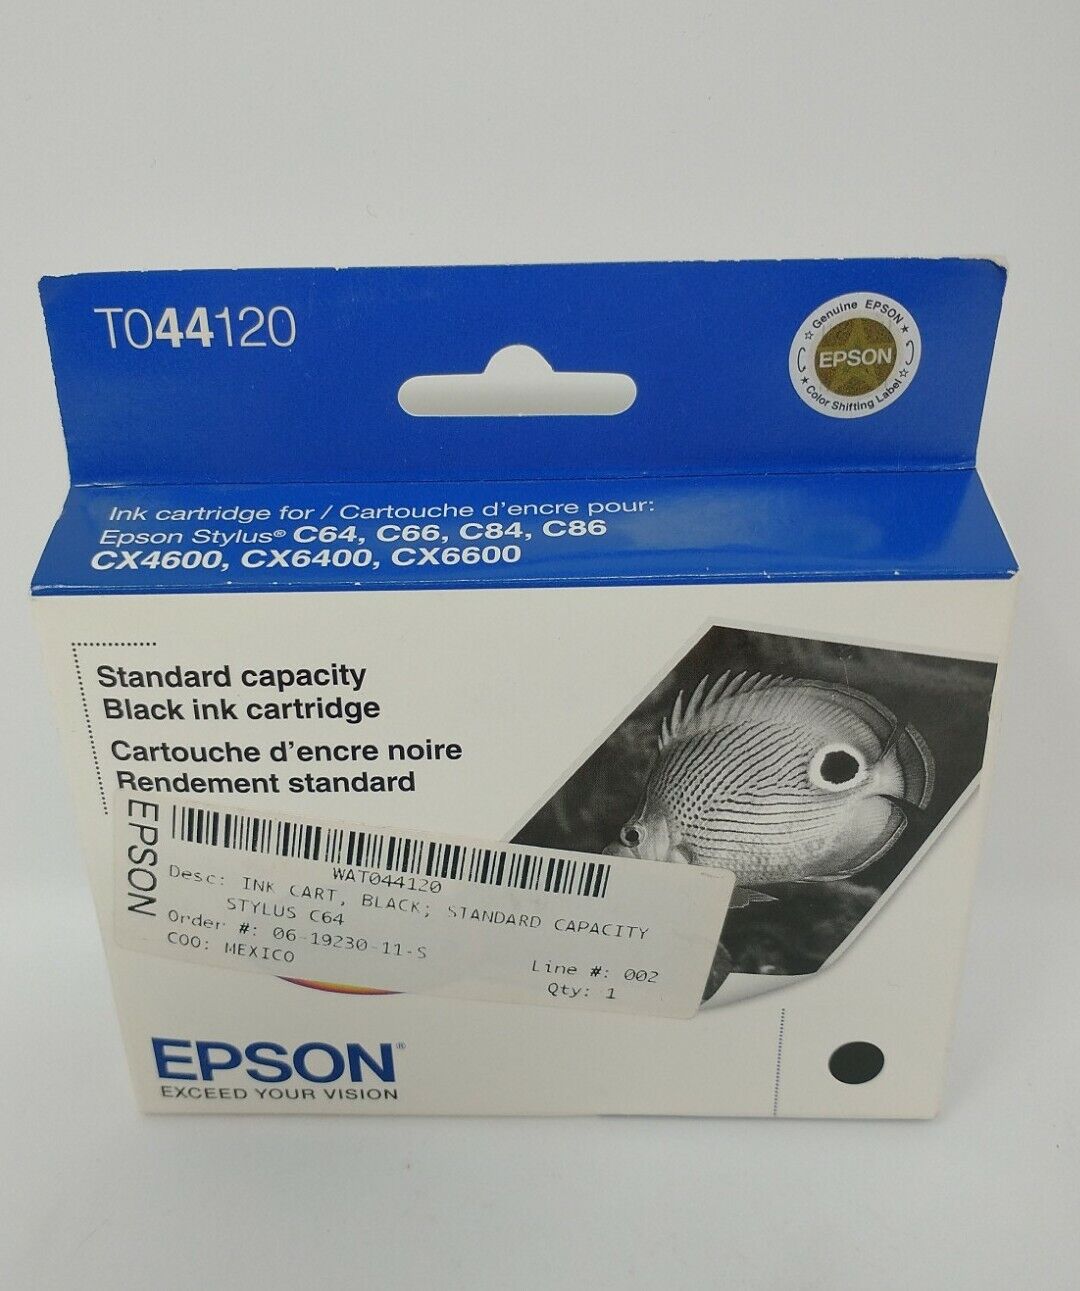 EPSON Stylus T044120 Black Ink Cartridge NEW Factory Sealed EXPIRED 11/2013